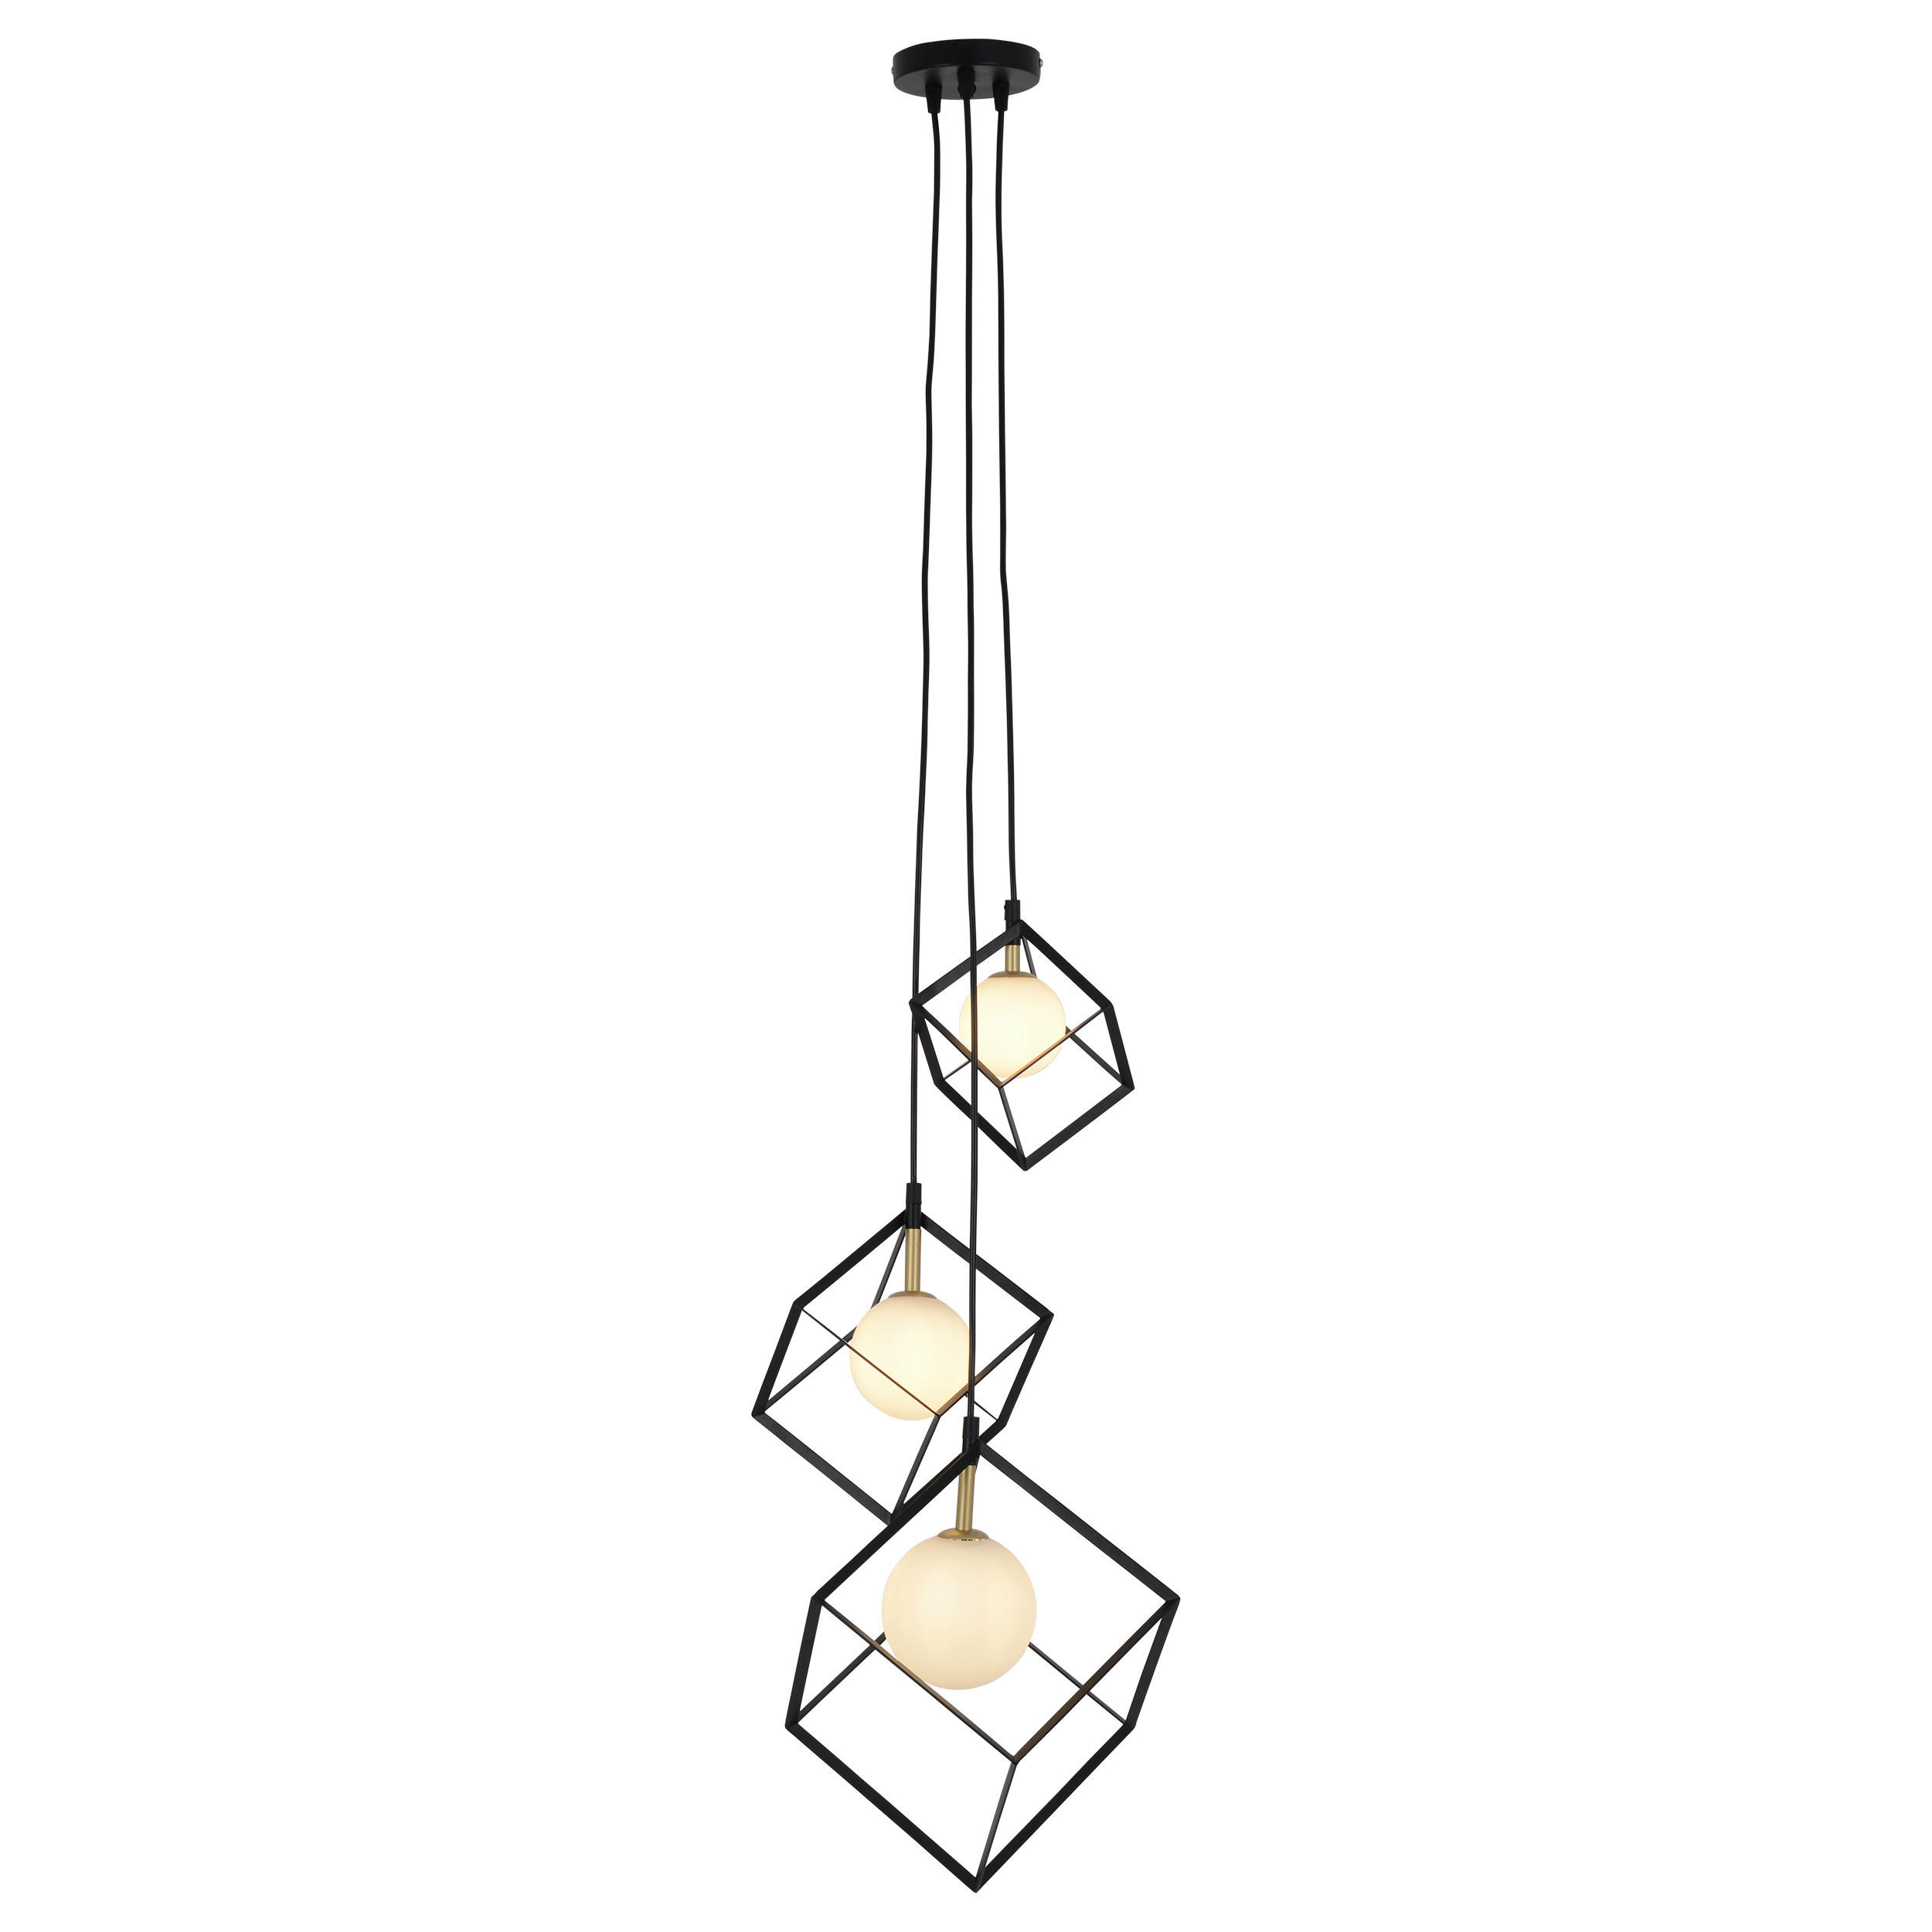 Wohnland Breitwieser , Lampen + Leuchten A-Z, Tischleuchten, näve, näve  Metall-Pendelleuchte Pinhead, oranges Metall – Durchmesser ca. 22 cm